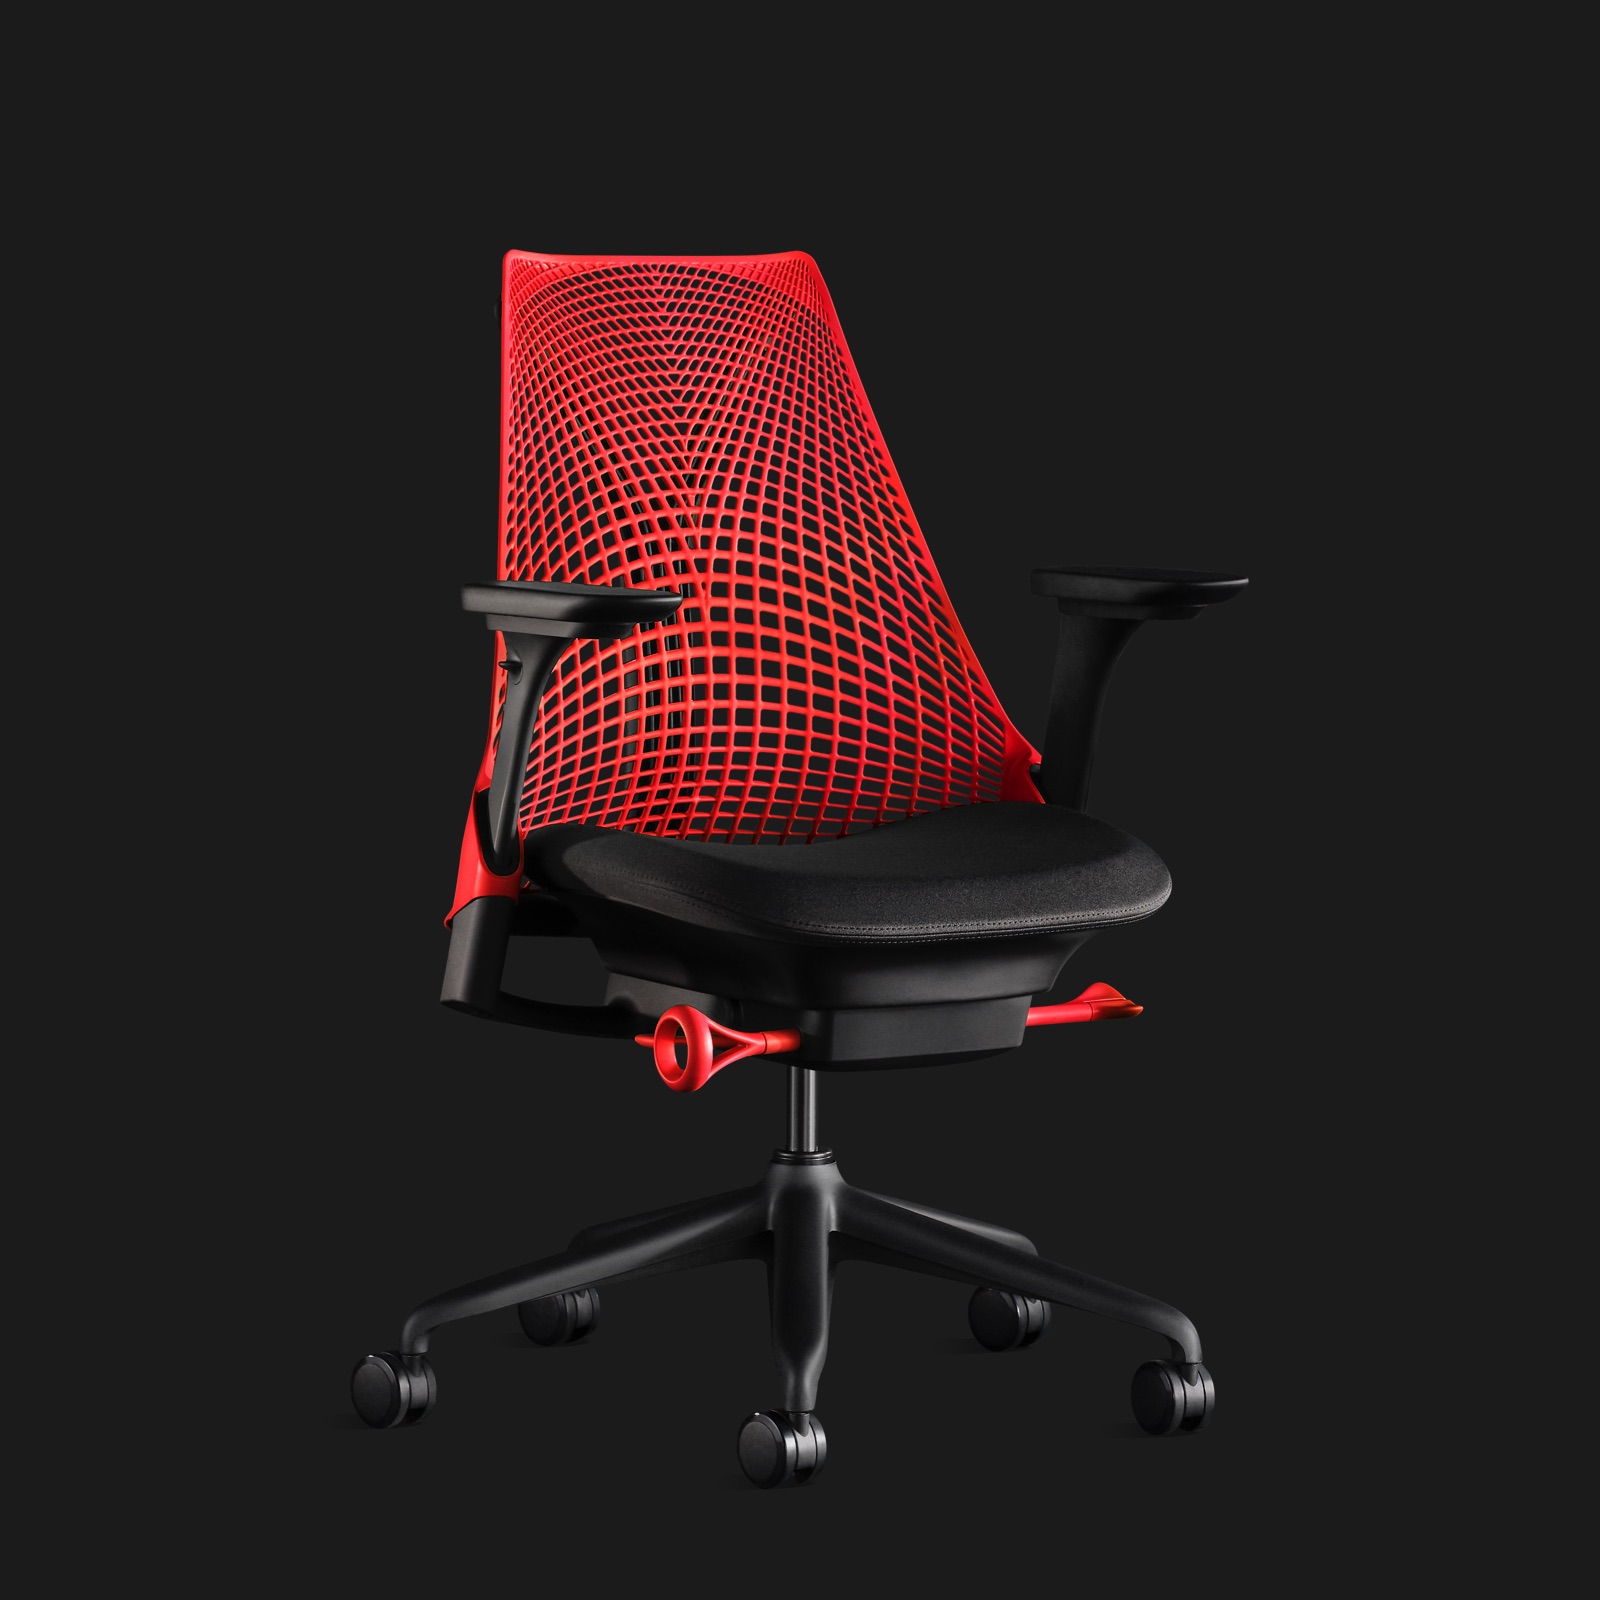 Uma cadeira Sayl vermelha, mostrada em um ângulo, em um fundo preto.